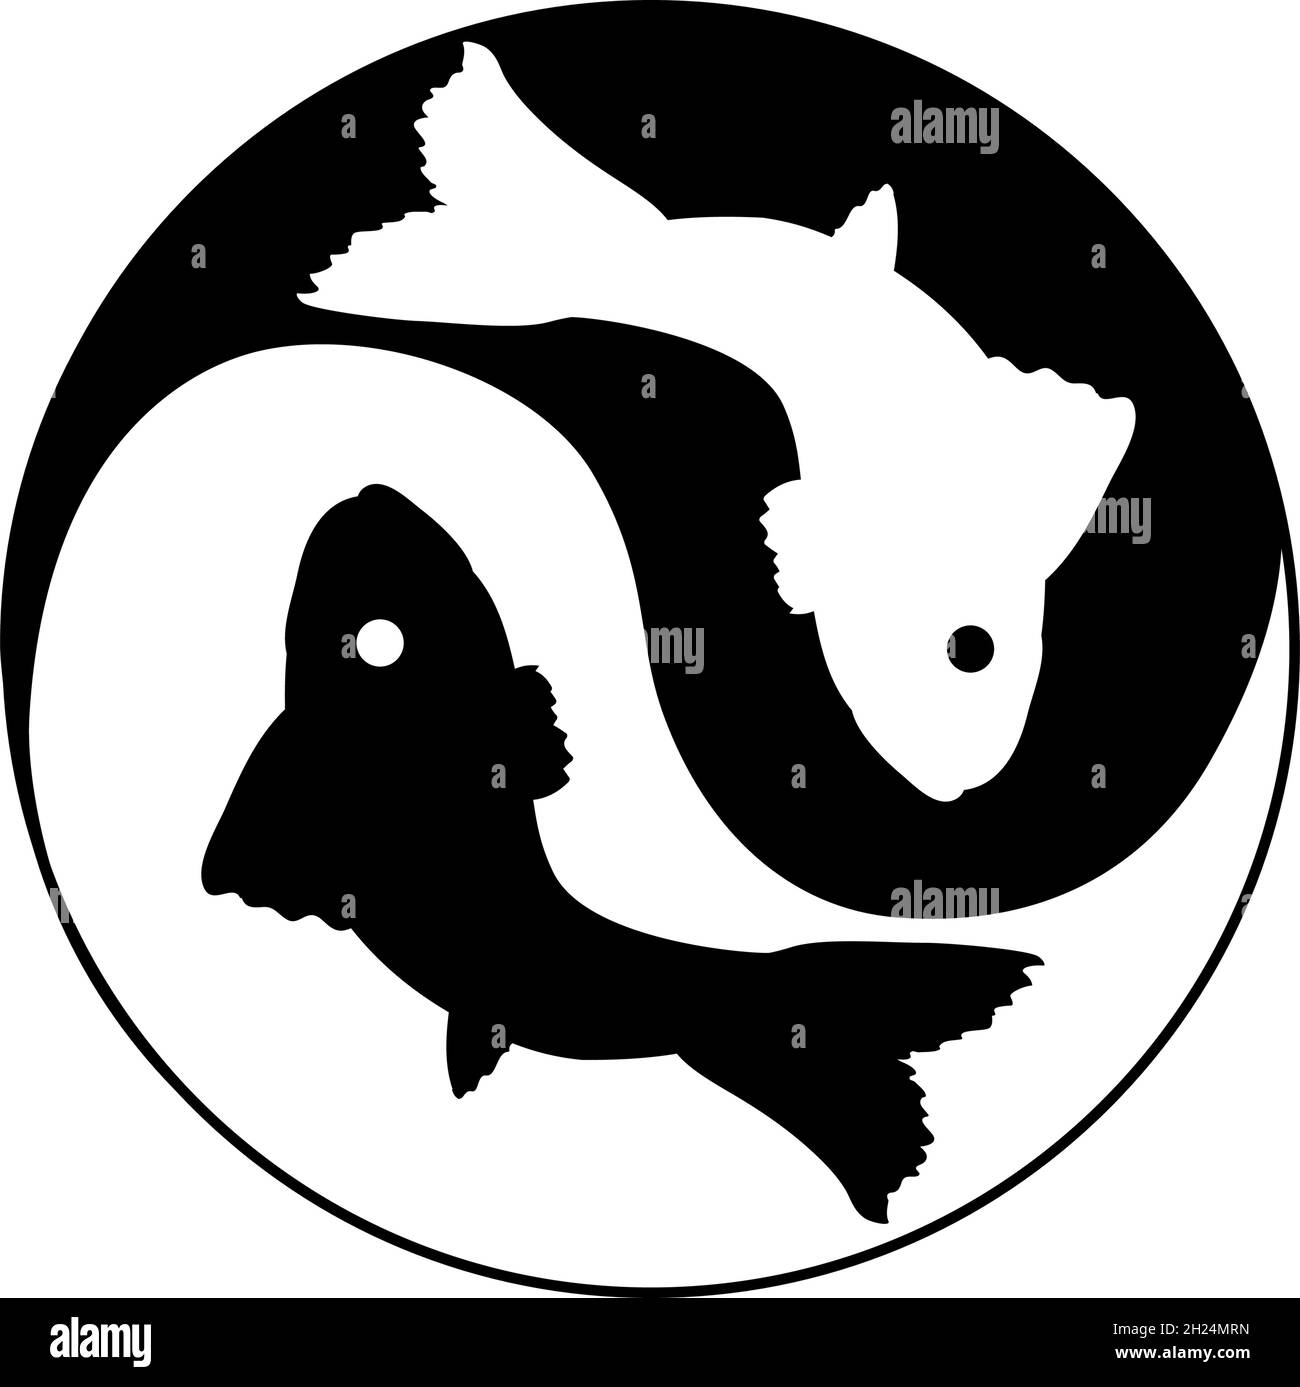 Pesce Yin e Yang simbolo di armonia ed equilibrio. Illustrazione Vettoriale